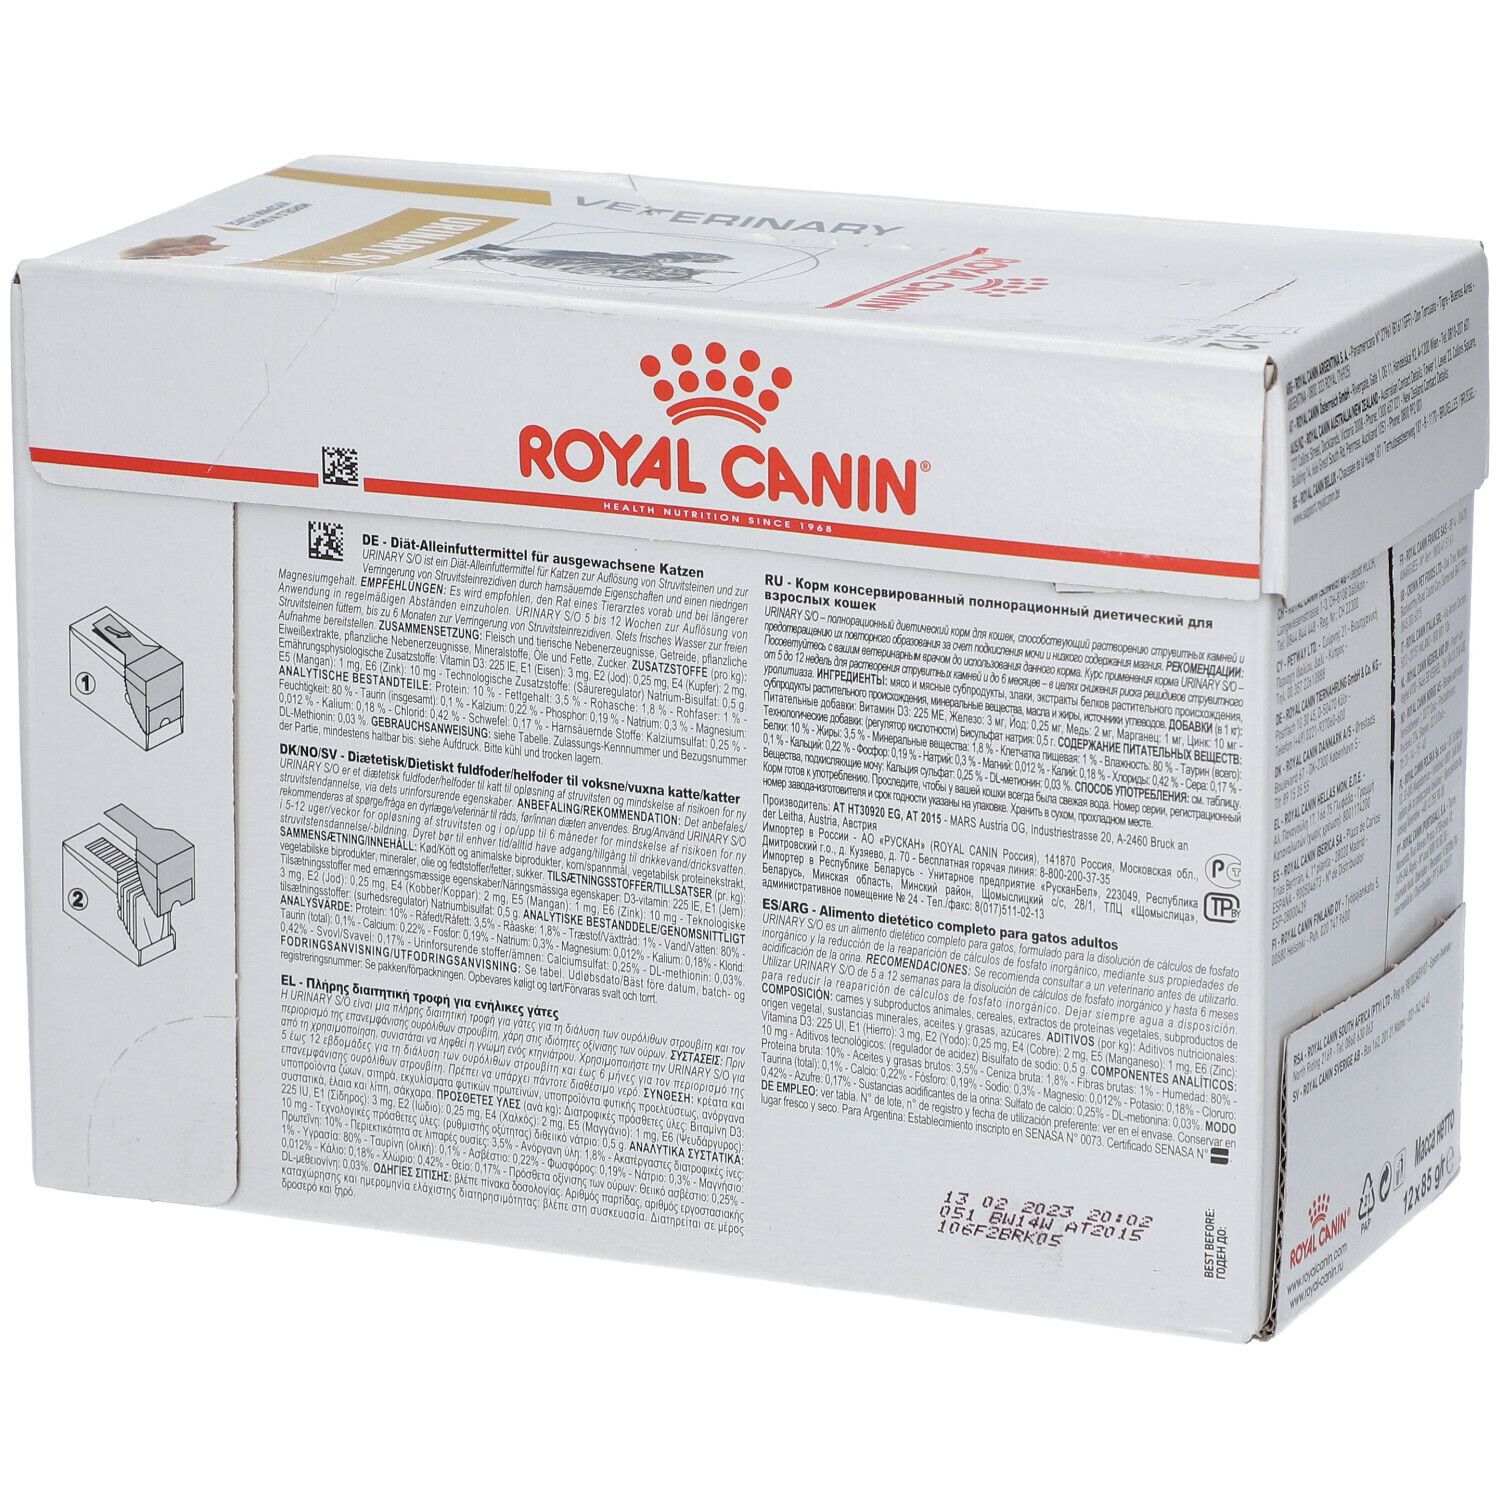 ROYAL CANIN Veterinary Urinary S/O, 12 x 85 g